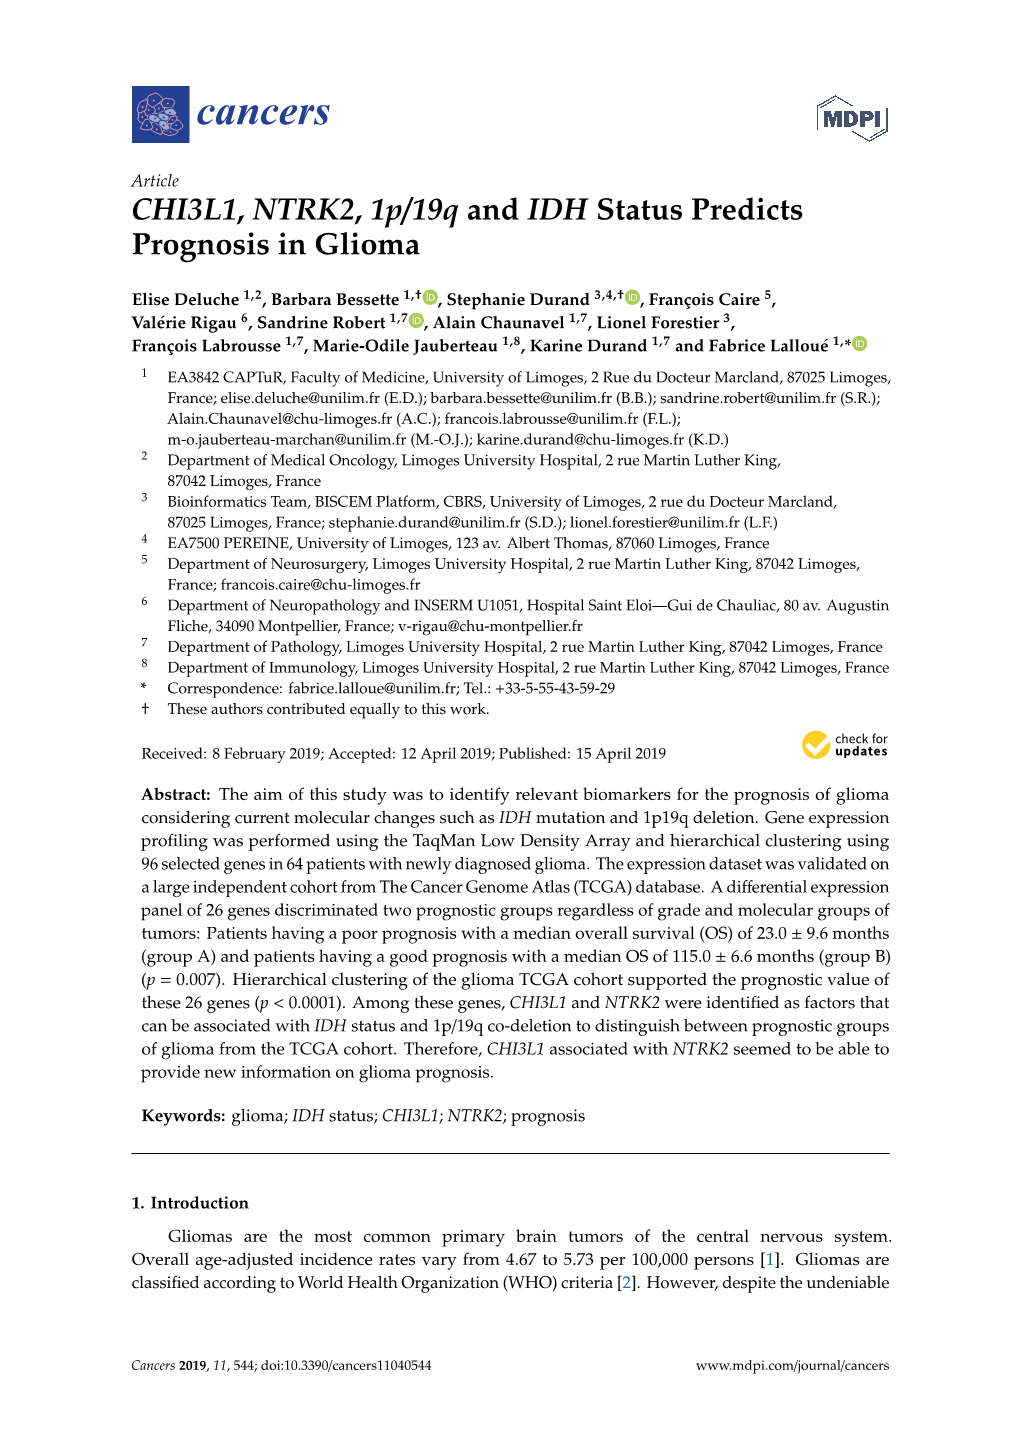 CHI3L1, NTRK2, 1P/19Q and IDH Status Predicts Prognosis in Glioma